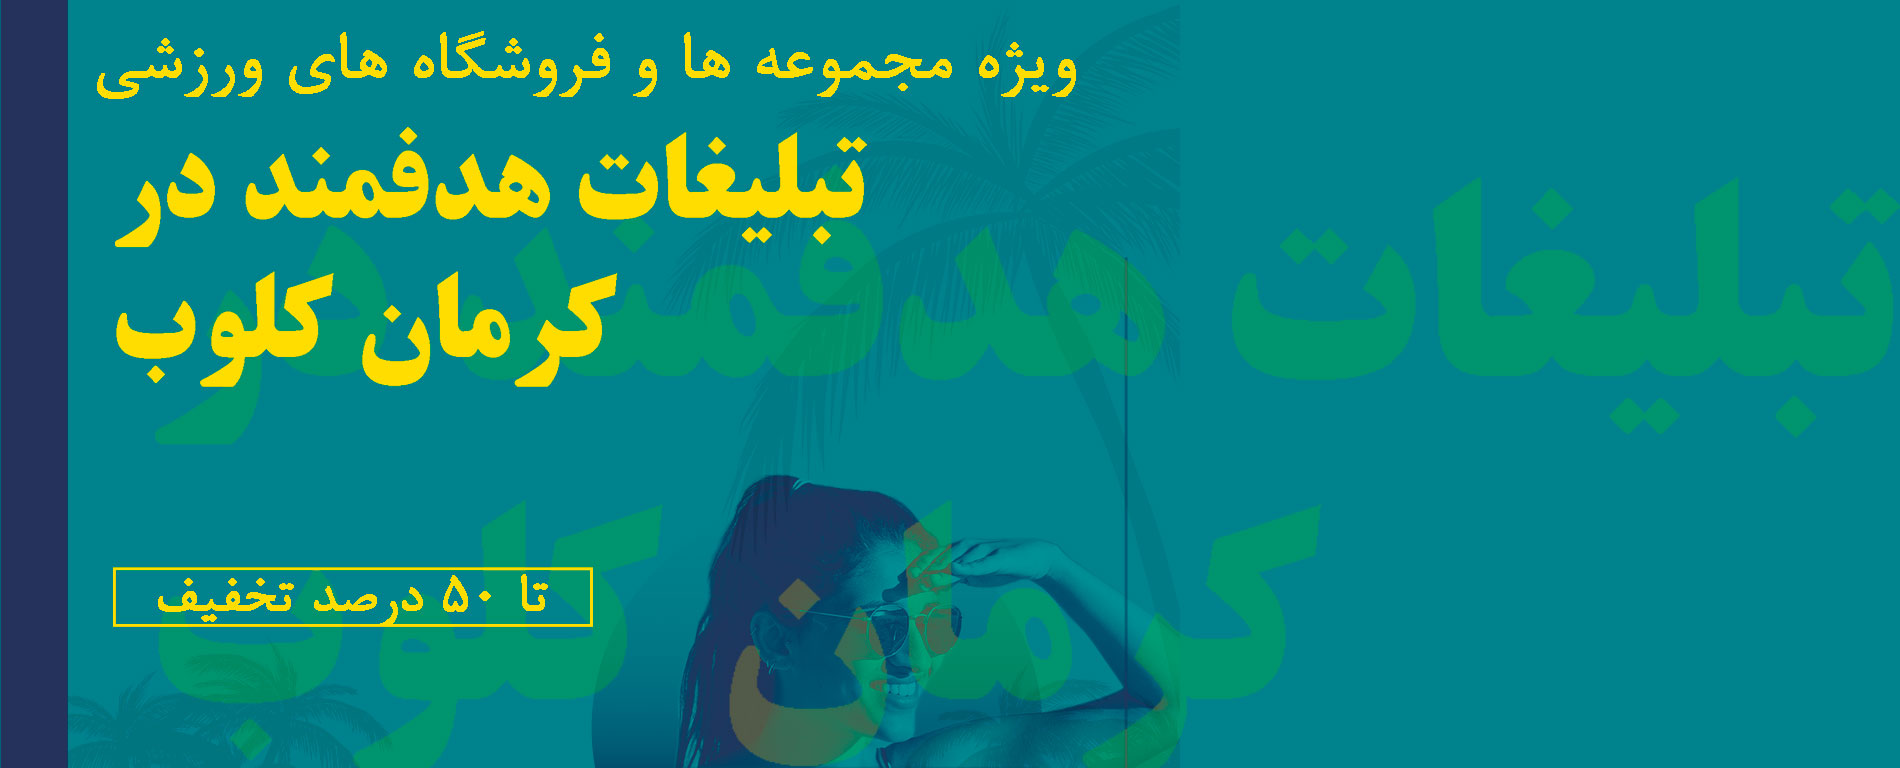 تبلیغات در کرمان کلوب